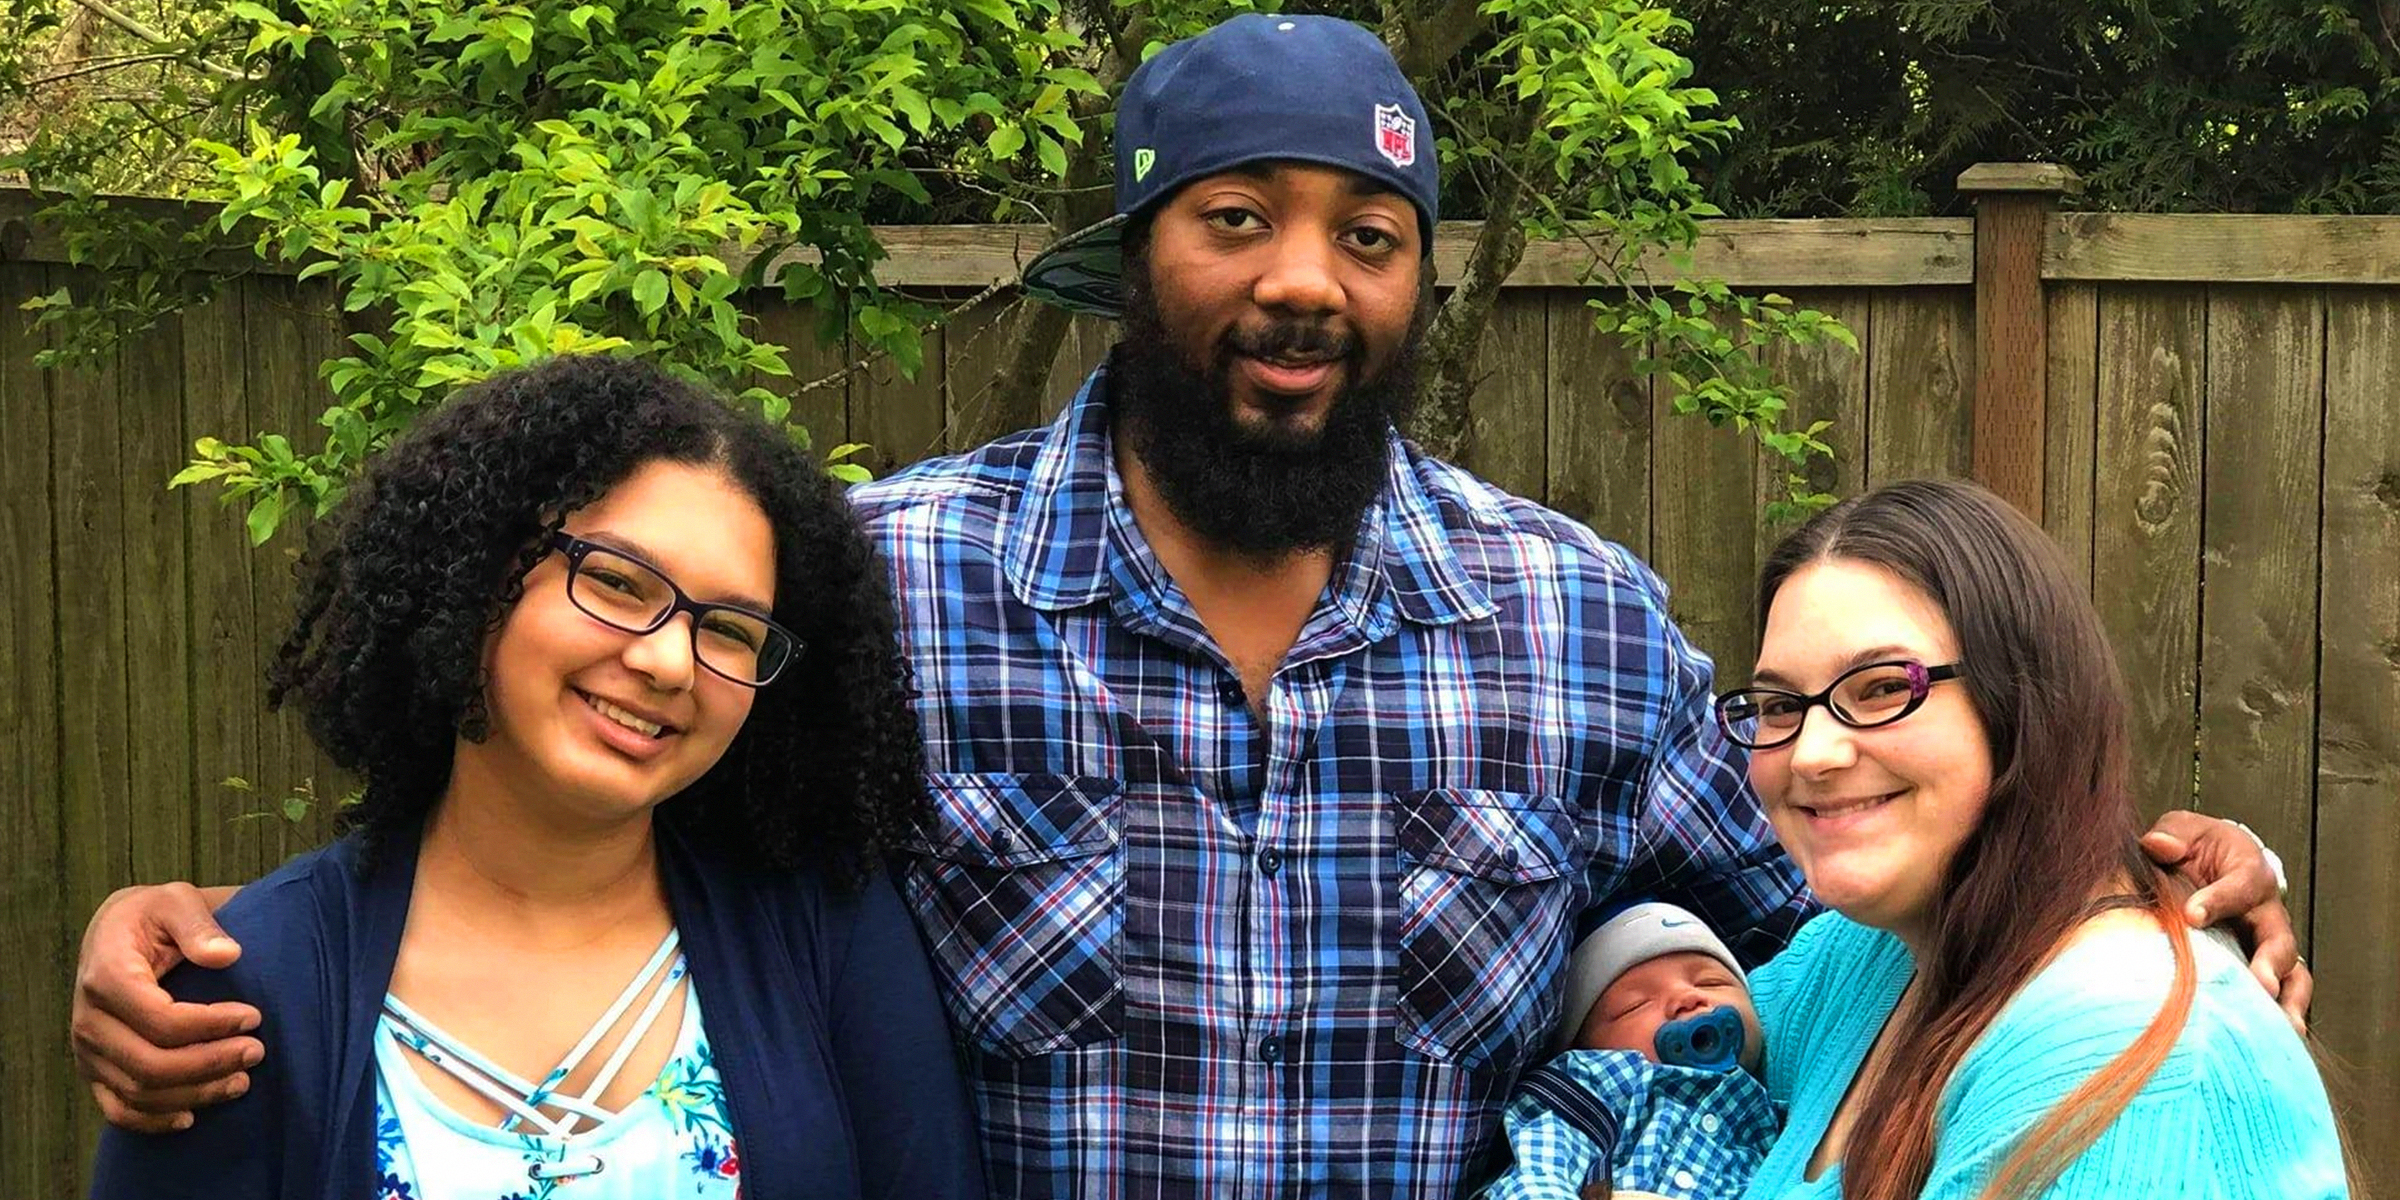 Kaymaii, Cameron, Nicolle Blackman, su esposo y su nuevo bebé, 2019 | Foto: Facebook.com/Mrs.Blackman16